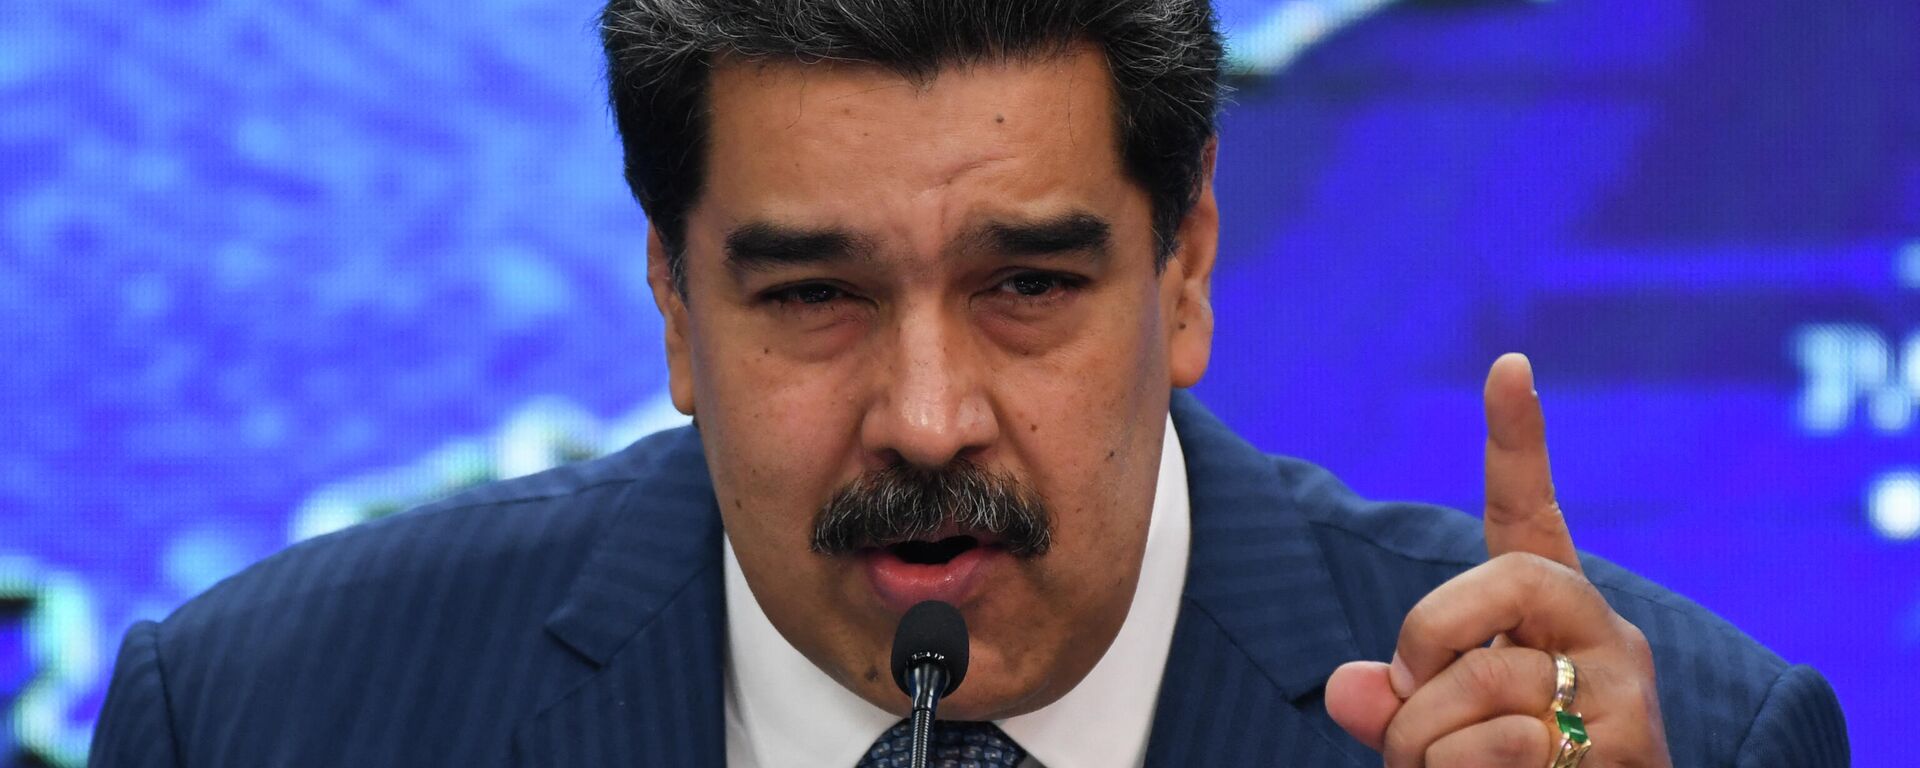 Nicolás Maduro, presidente de Venezuela - Sputnik Mundo, 1920, 23.09.2021